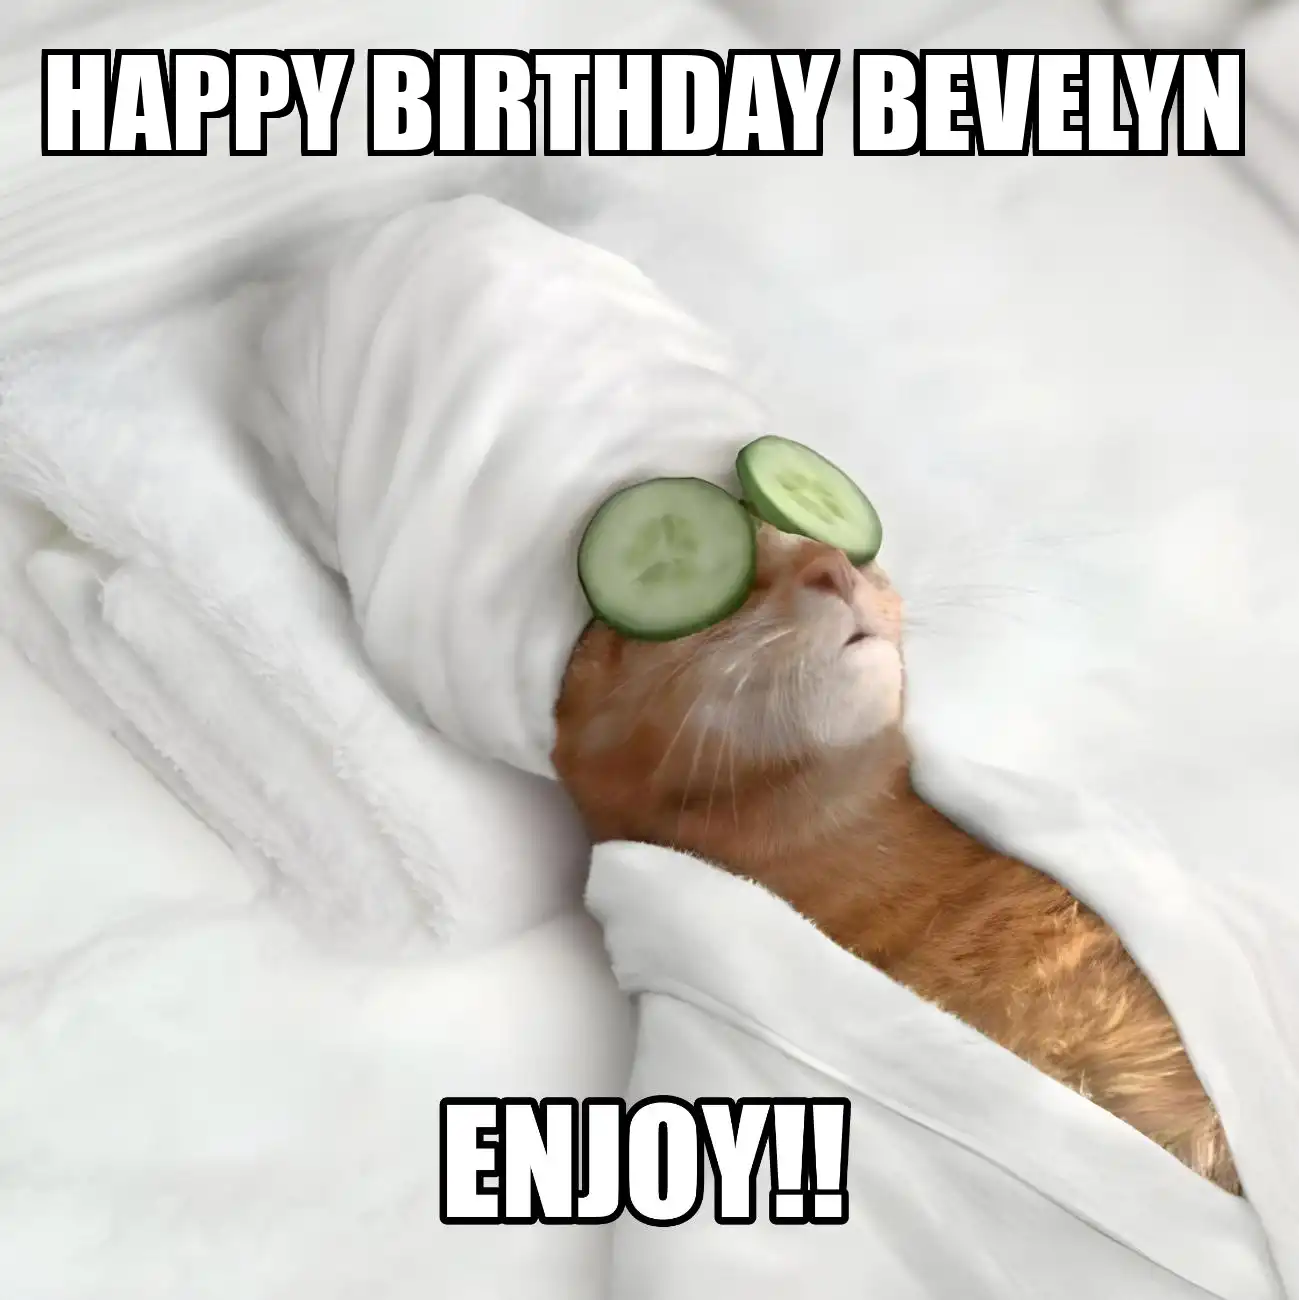 Happy Birthday Bevelyn Enjoy Cat Meme